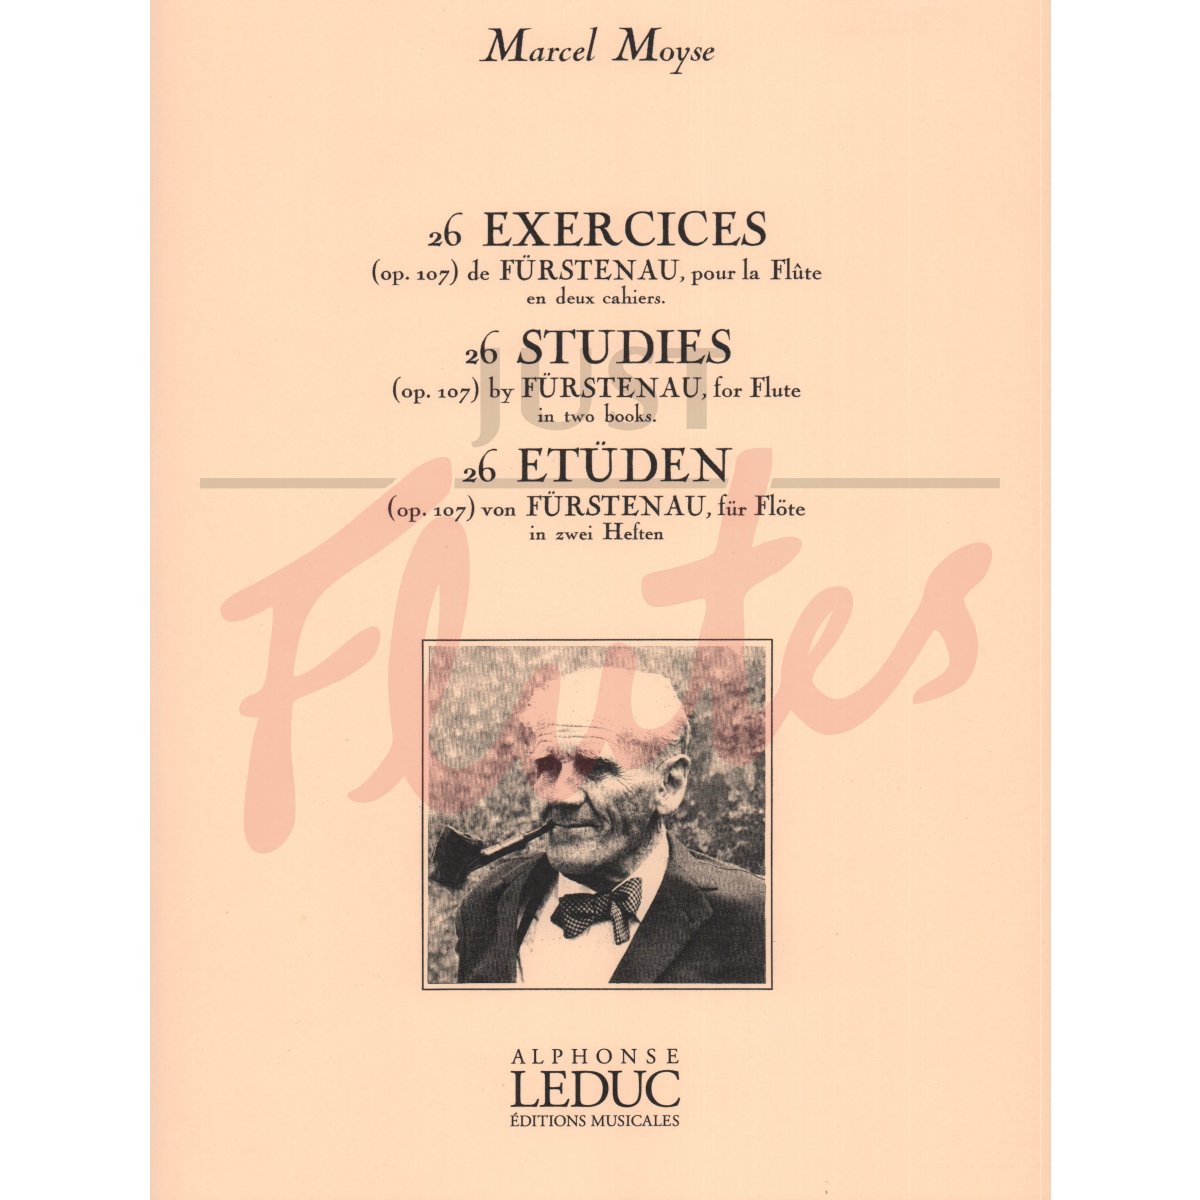 26 Exercices de Furstenau, Vol 1